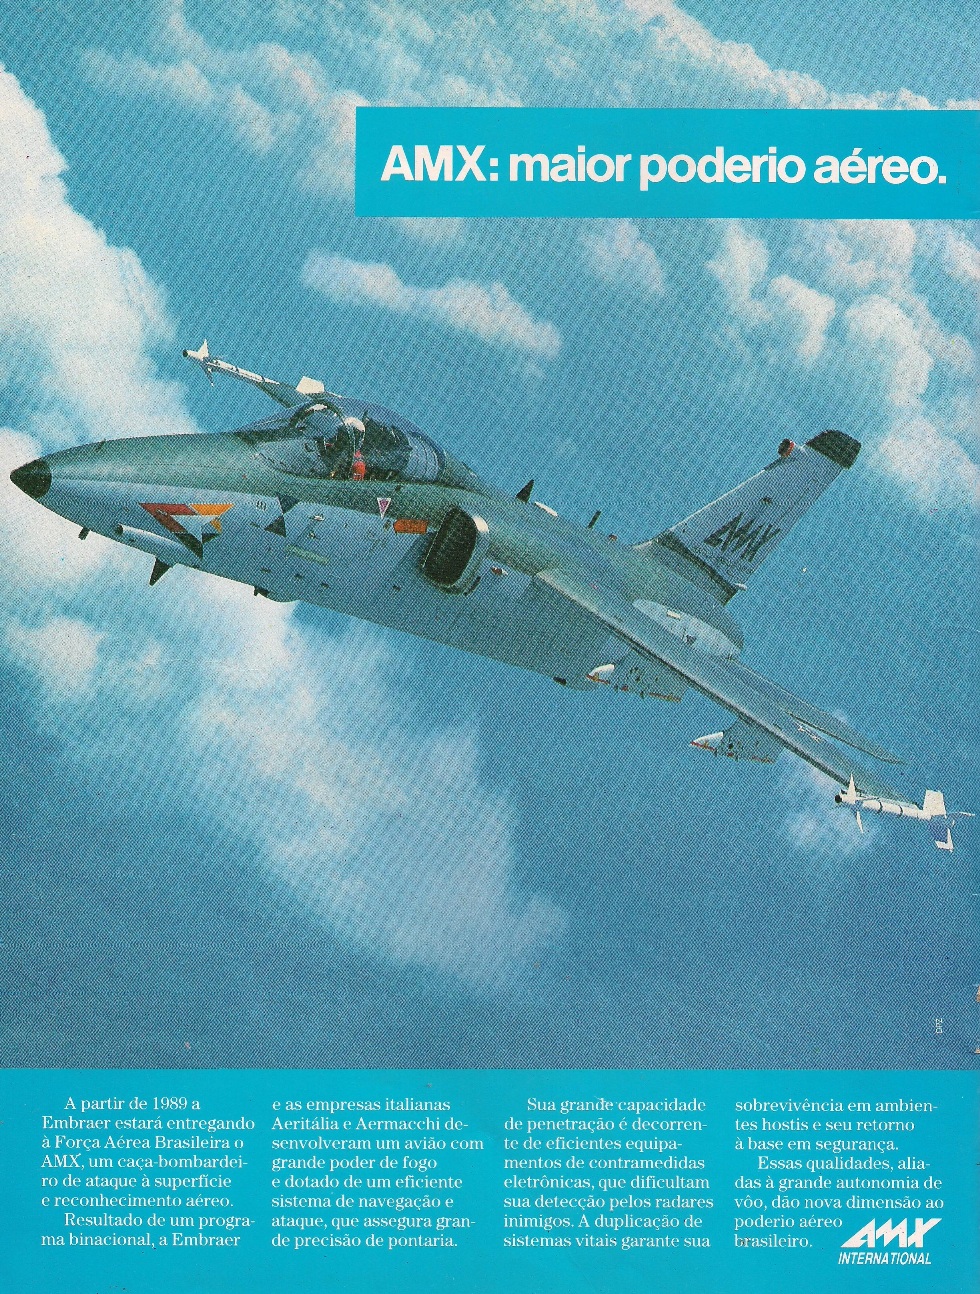 Cavok Brasil - Asas da Informação on Tumblr: Aermacchi/Alenia/Embraer AMX  (A-1) FAB 5520 - 1º/16º GAV Esquadrão Adelphi, www.cavok.com.br